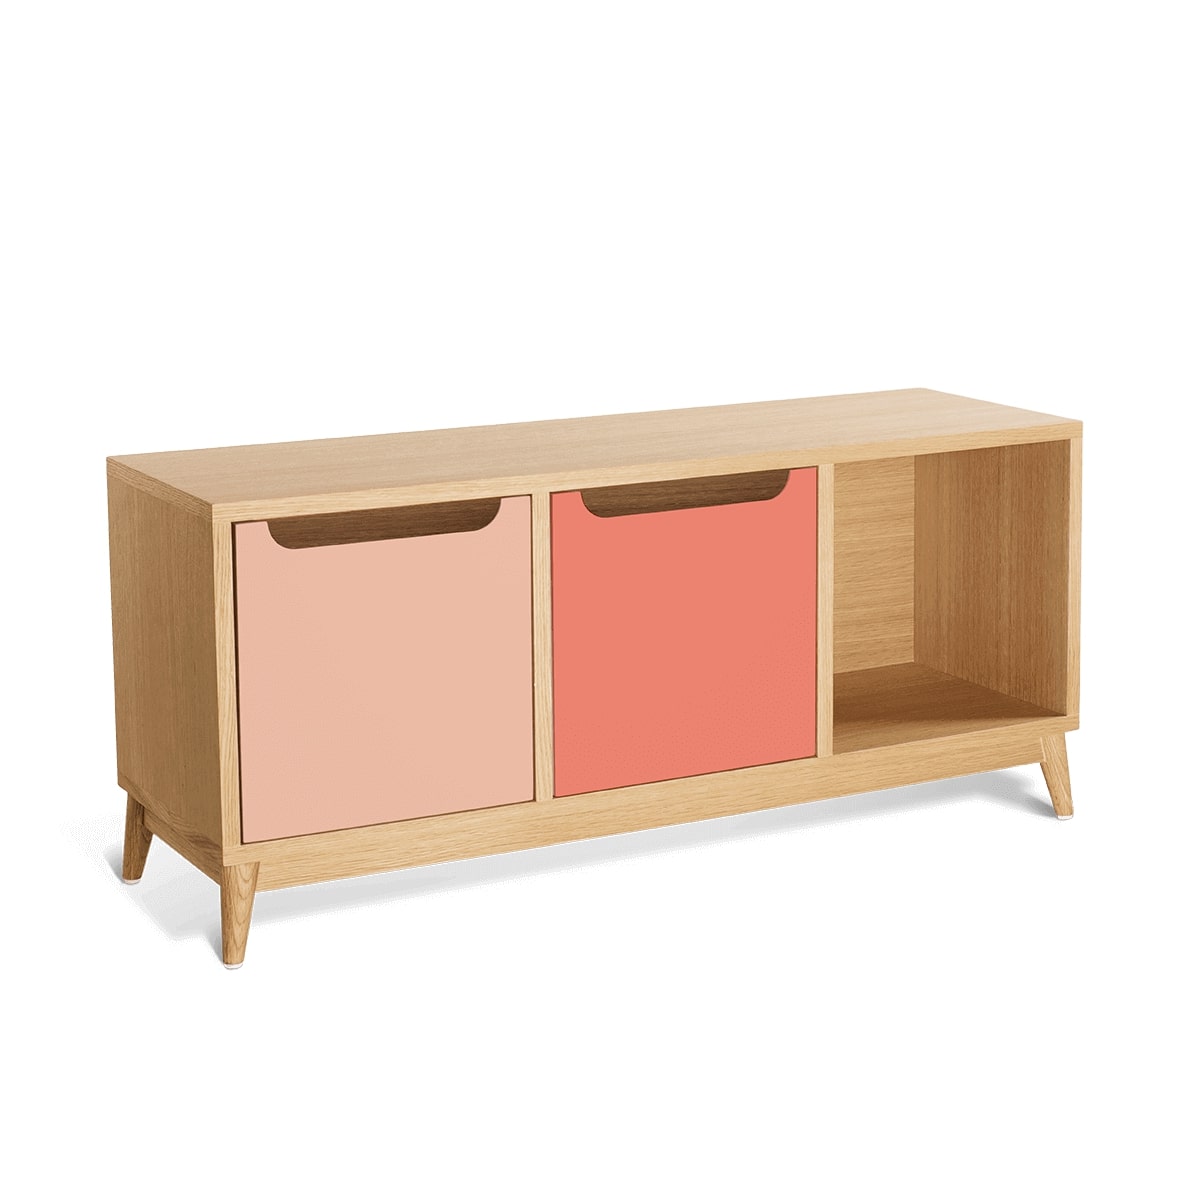 meuble bas à tiroirs KILT de la marque Kulile en chêne naturel et duo de rose